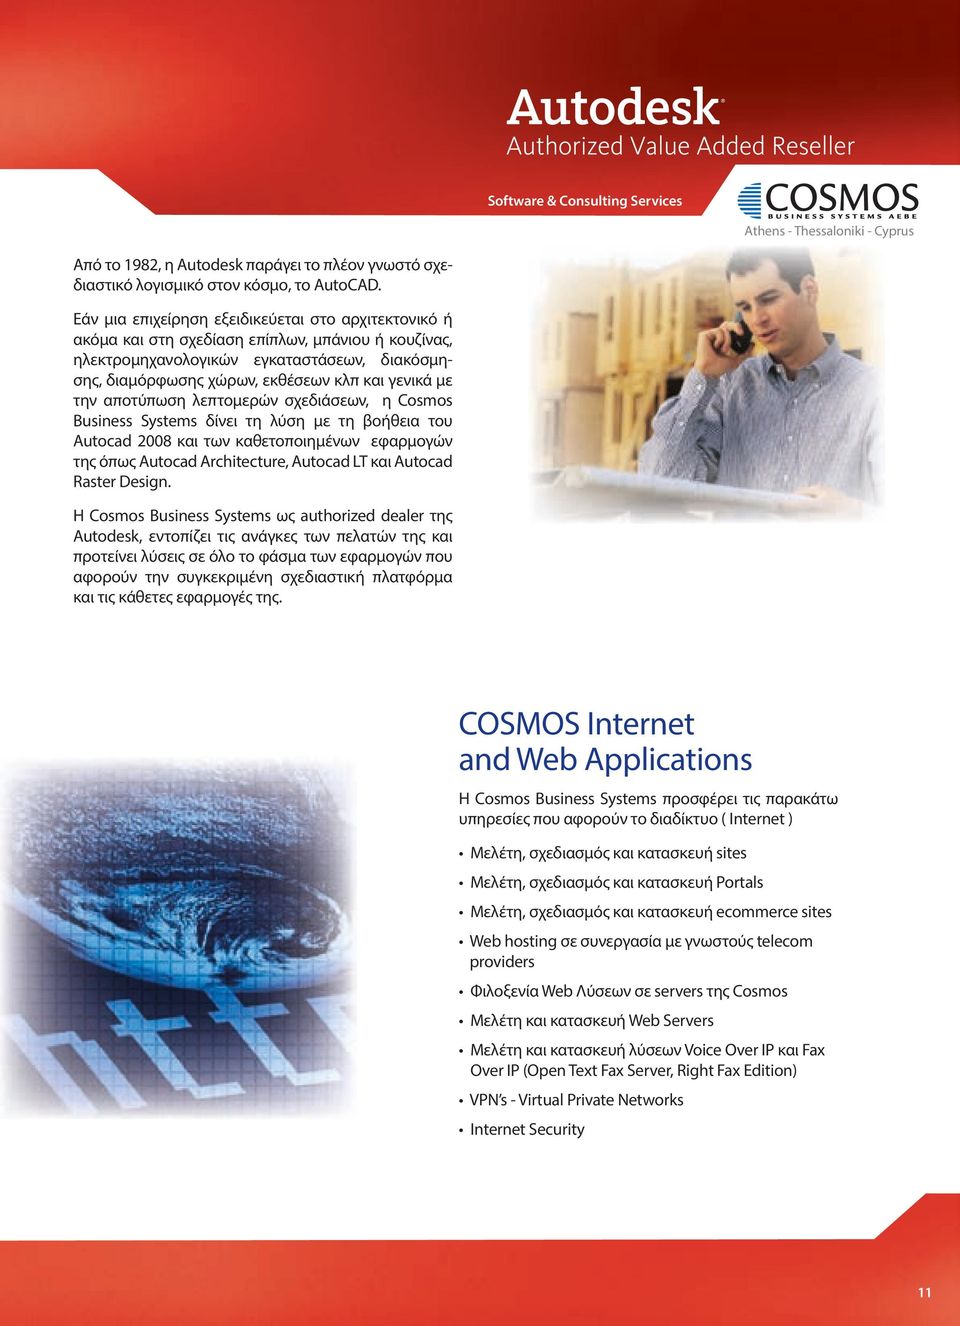 την αποτύπωση λεπτομερών σχεδιάσεων, η Cosmos Business Systems δίνει τη λύση με τη βοήθεια του Autocad 2008 και των καθετοποιημένων εφαρμογών της όπως Autocad Architecture, Autocad LT και Autocad